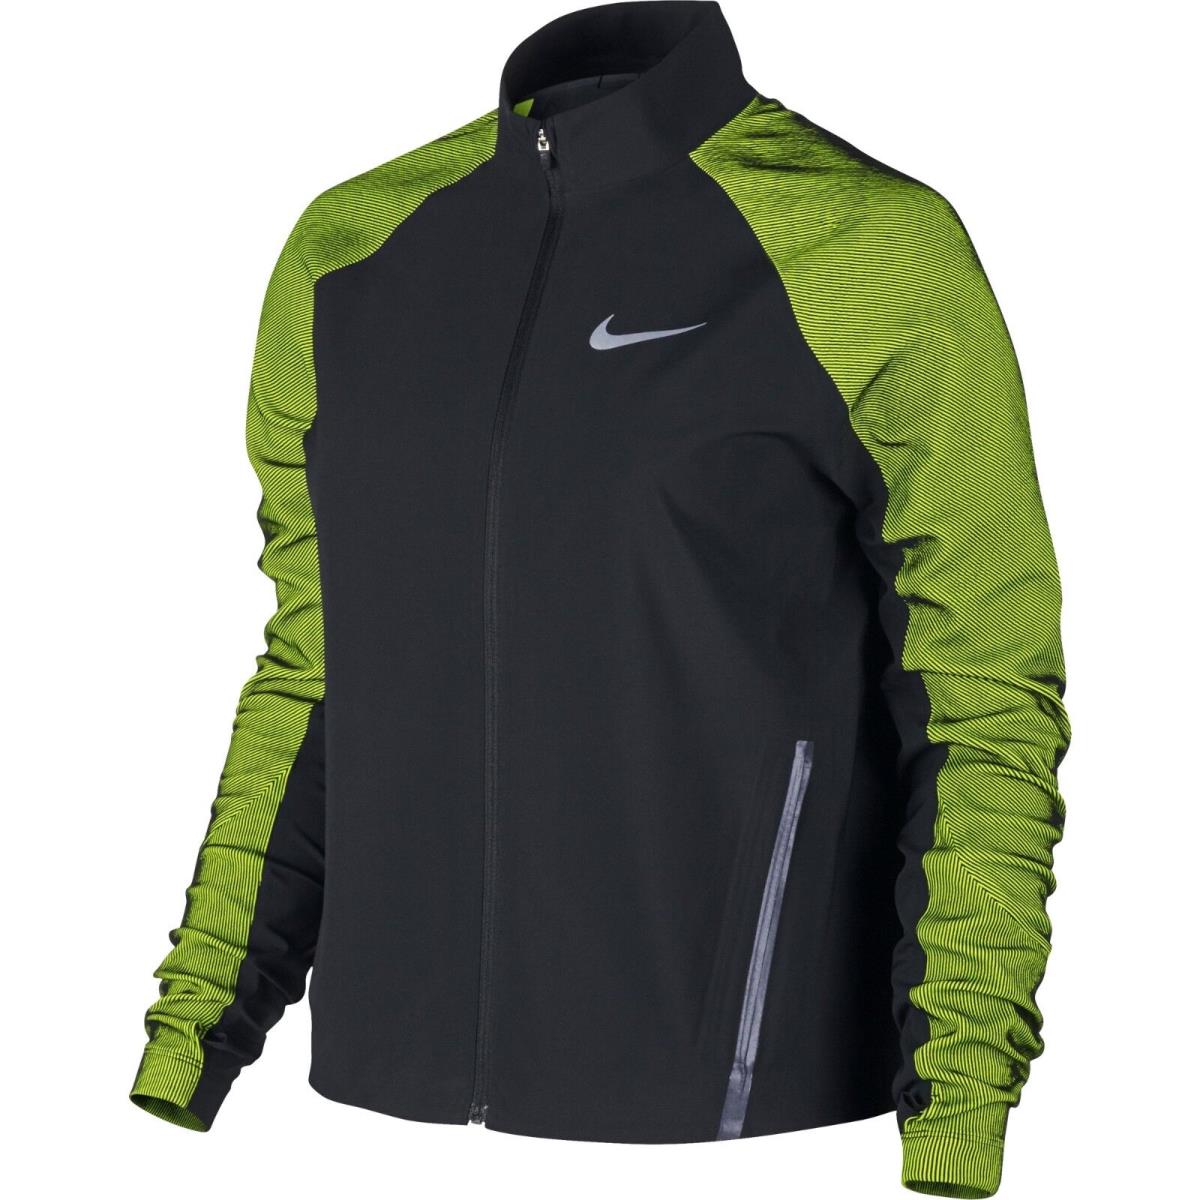 Womens S/small Nike Dri-fit Flex Running/training jacket/822552-010